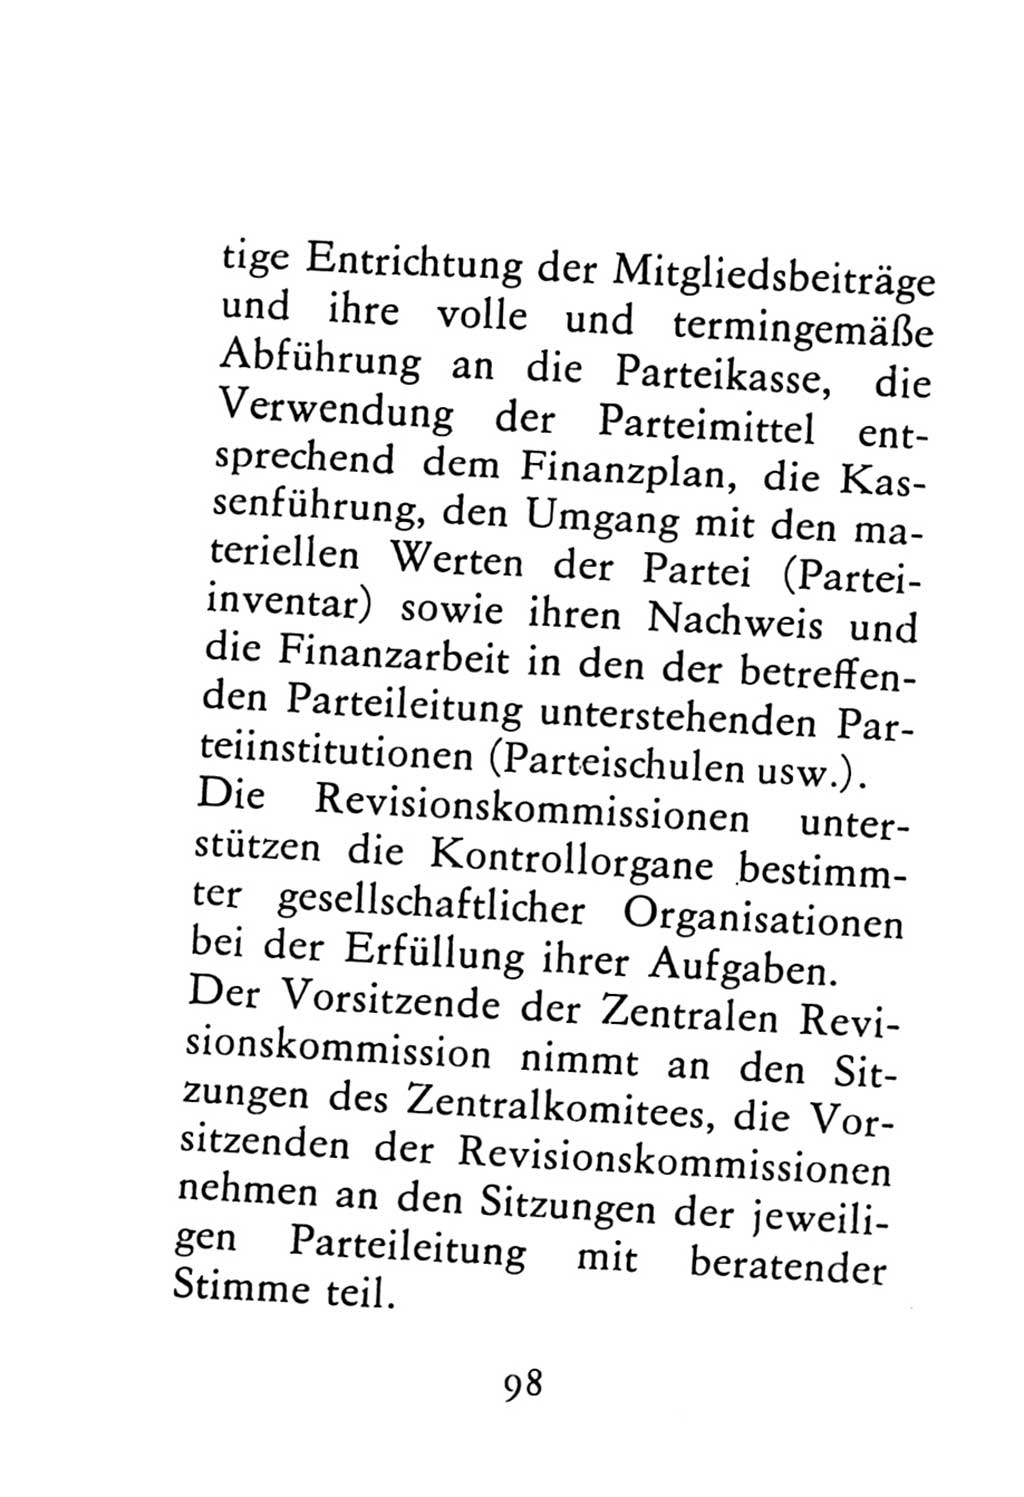 Statut der Sozialistischen Einheitspartei Deutschlands (SED) 1976, Seite 98 (St. SED DDR 1976, S. 98)